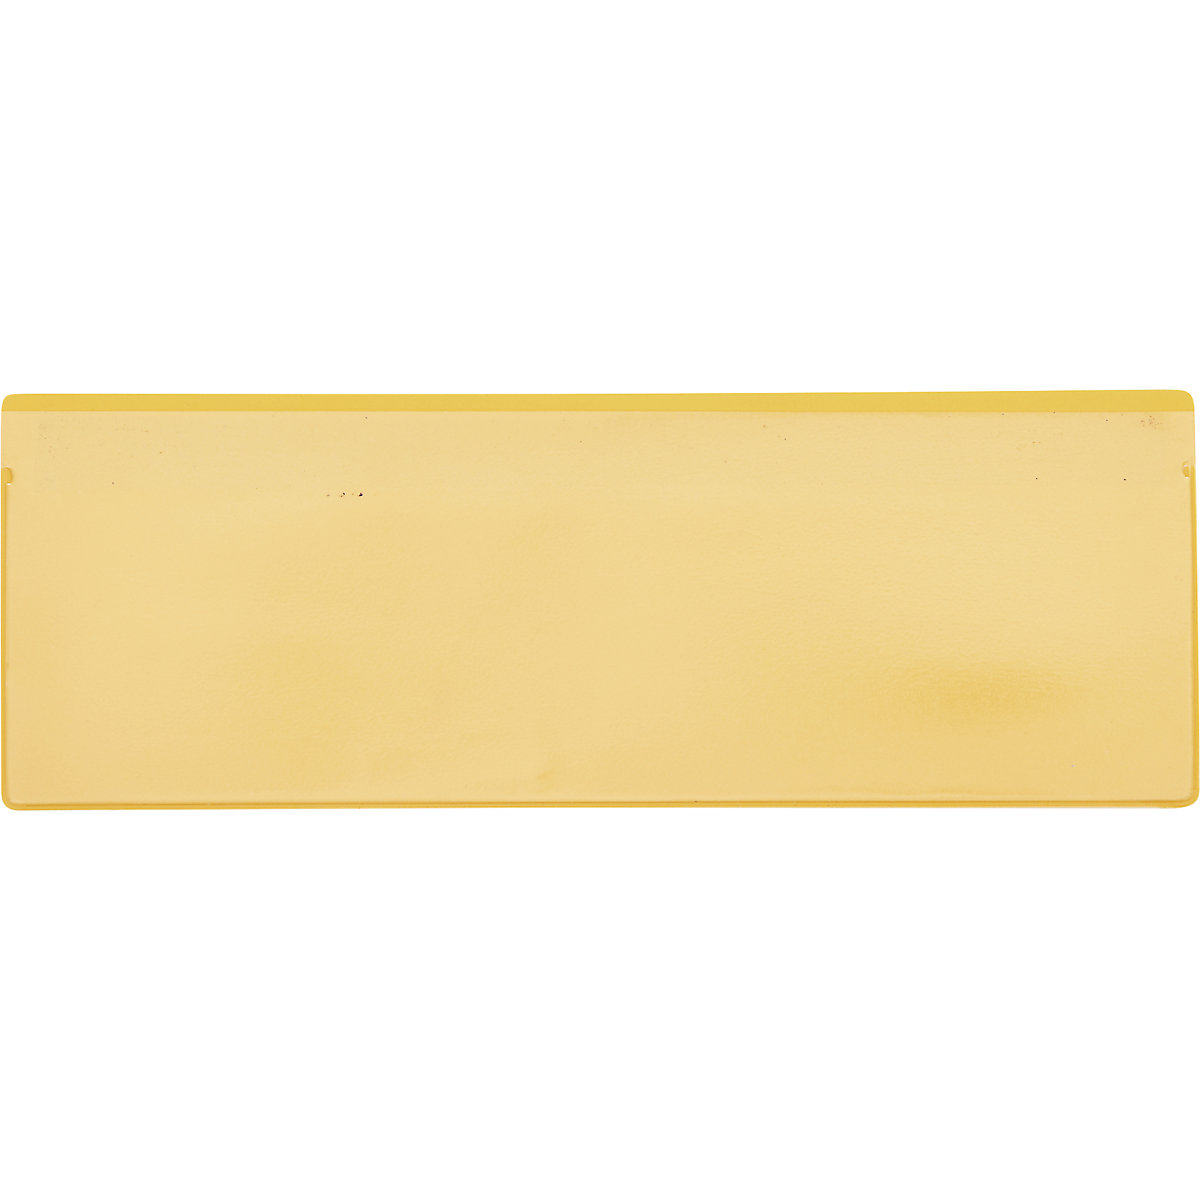 Porte-étiquettes magnétiques, lot de 50, avec bandes magnétiques, l x h 220 x 80 mm, VDA, jaune